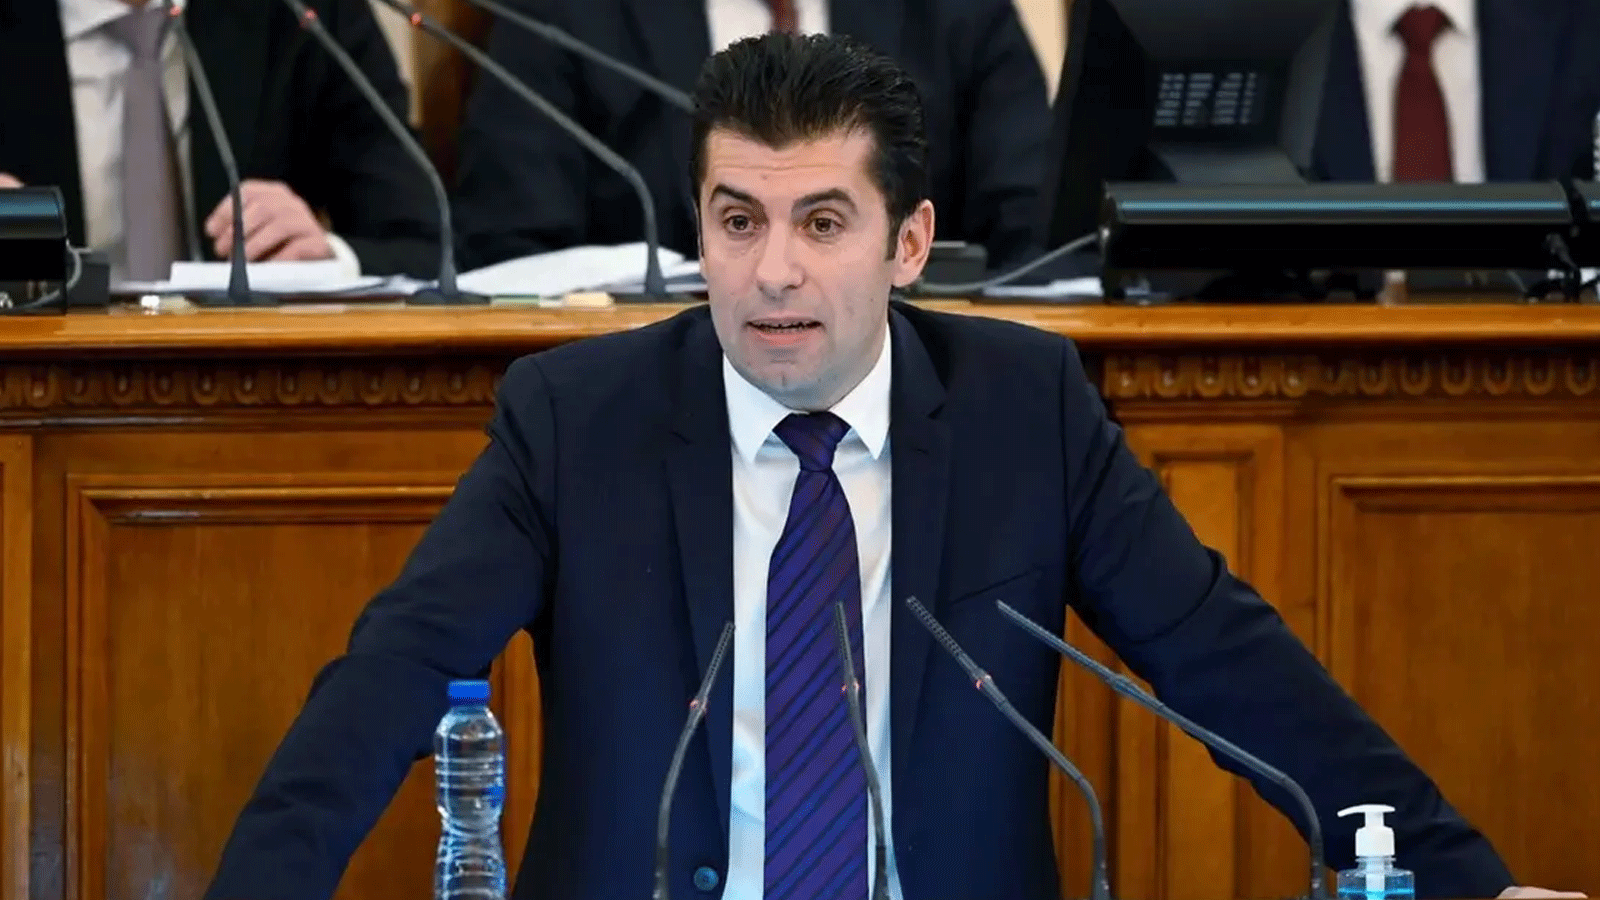 رئيس الوزراء البلغاري وزعيم حزب نواصل التغيير (PP) كيريل بيتكوفKيتحدث قبل أداء اليمين في مبنى البرلمان البلغاري في صوفيا. 13 كانون الأول\ديسمبر 2021